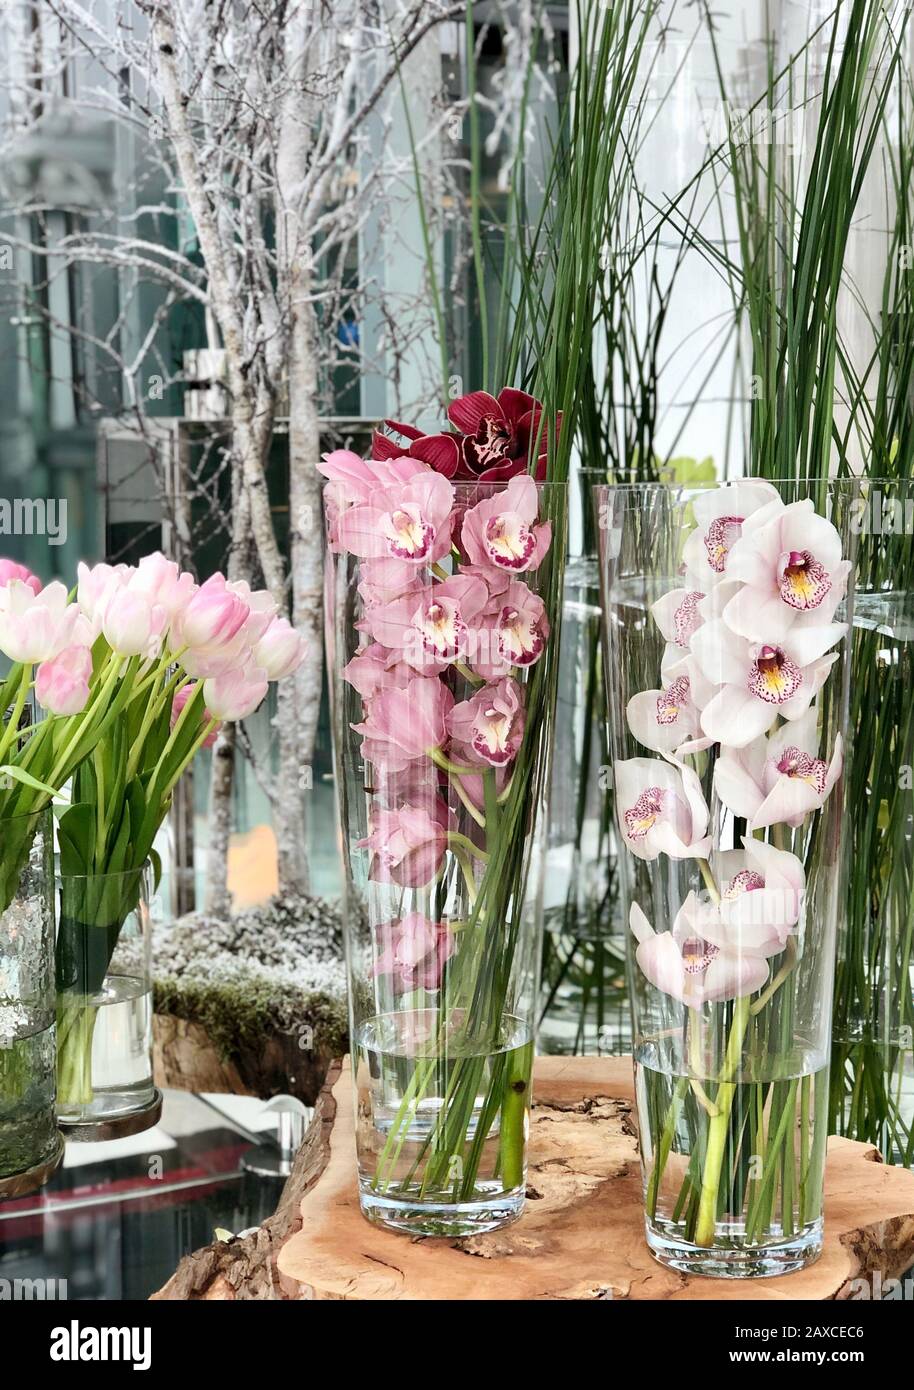 Tulipes et orchidées dans des vases en verre. Banque D'Images